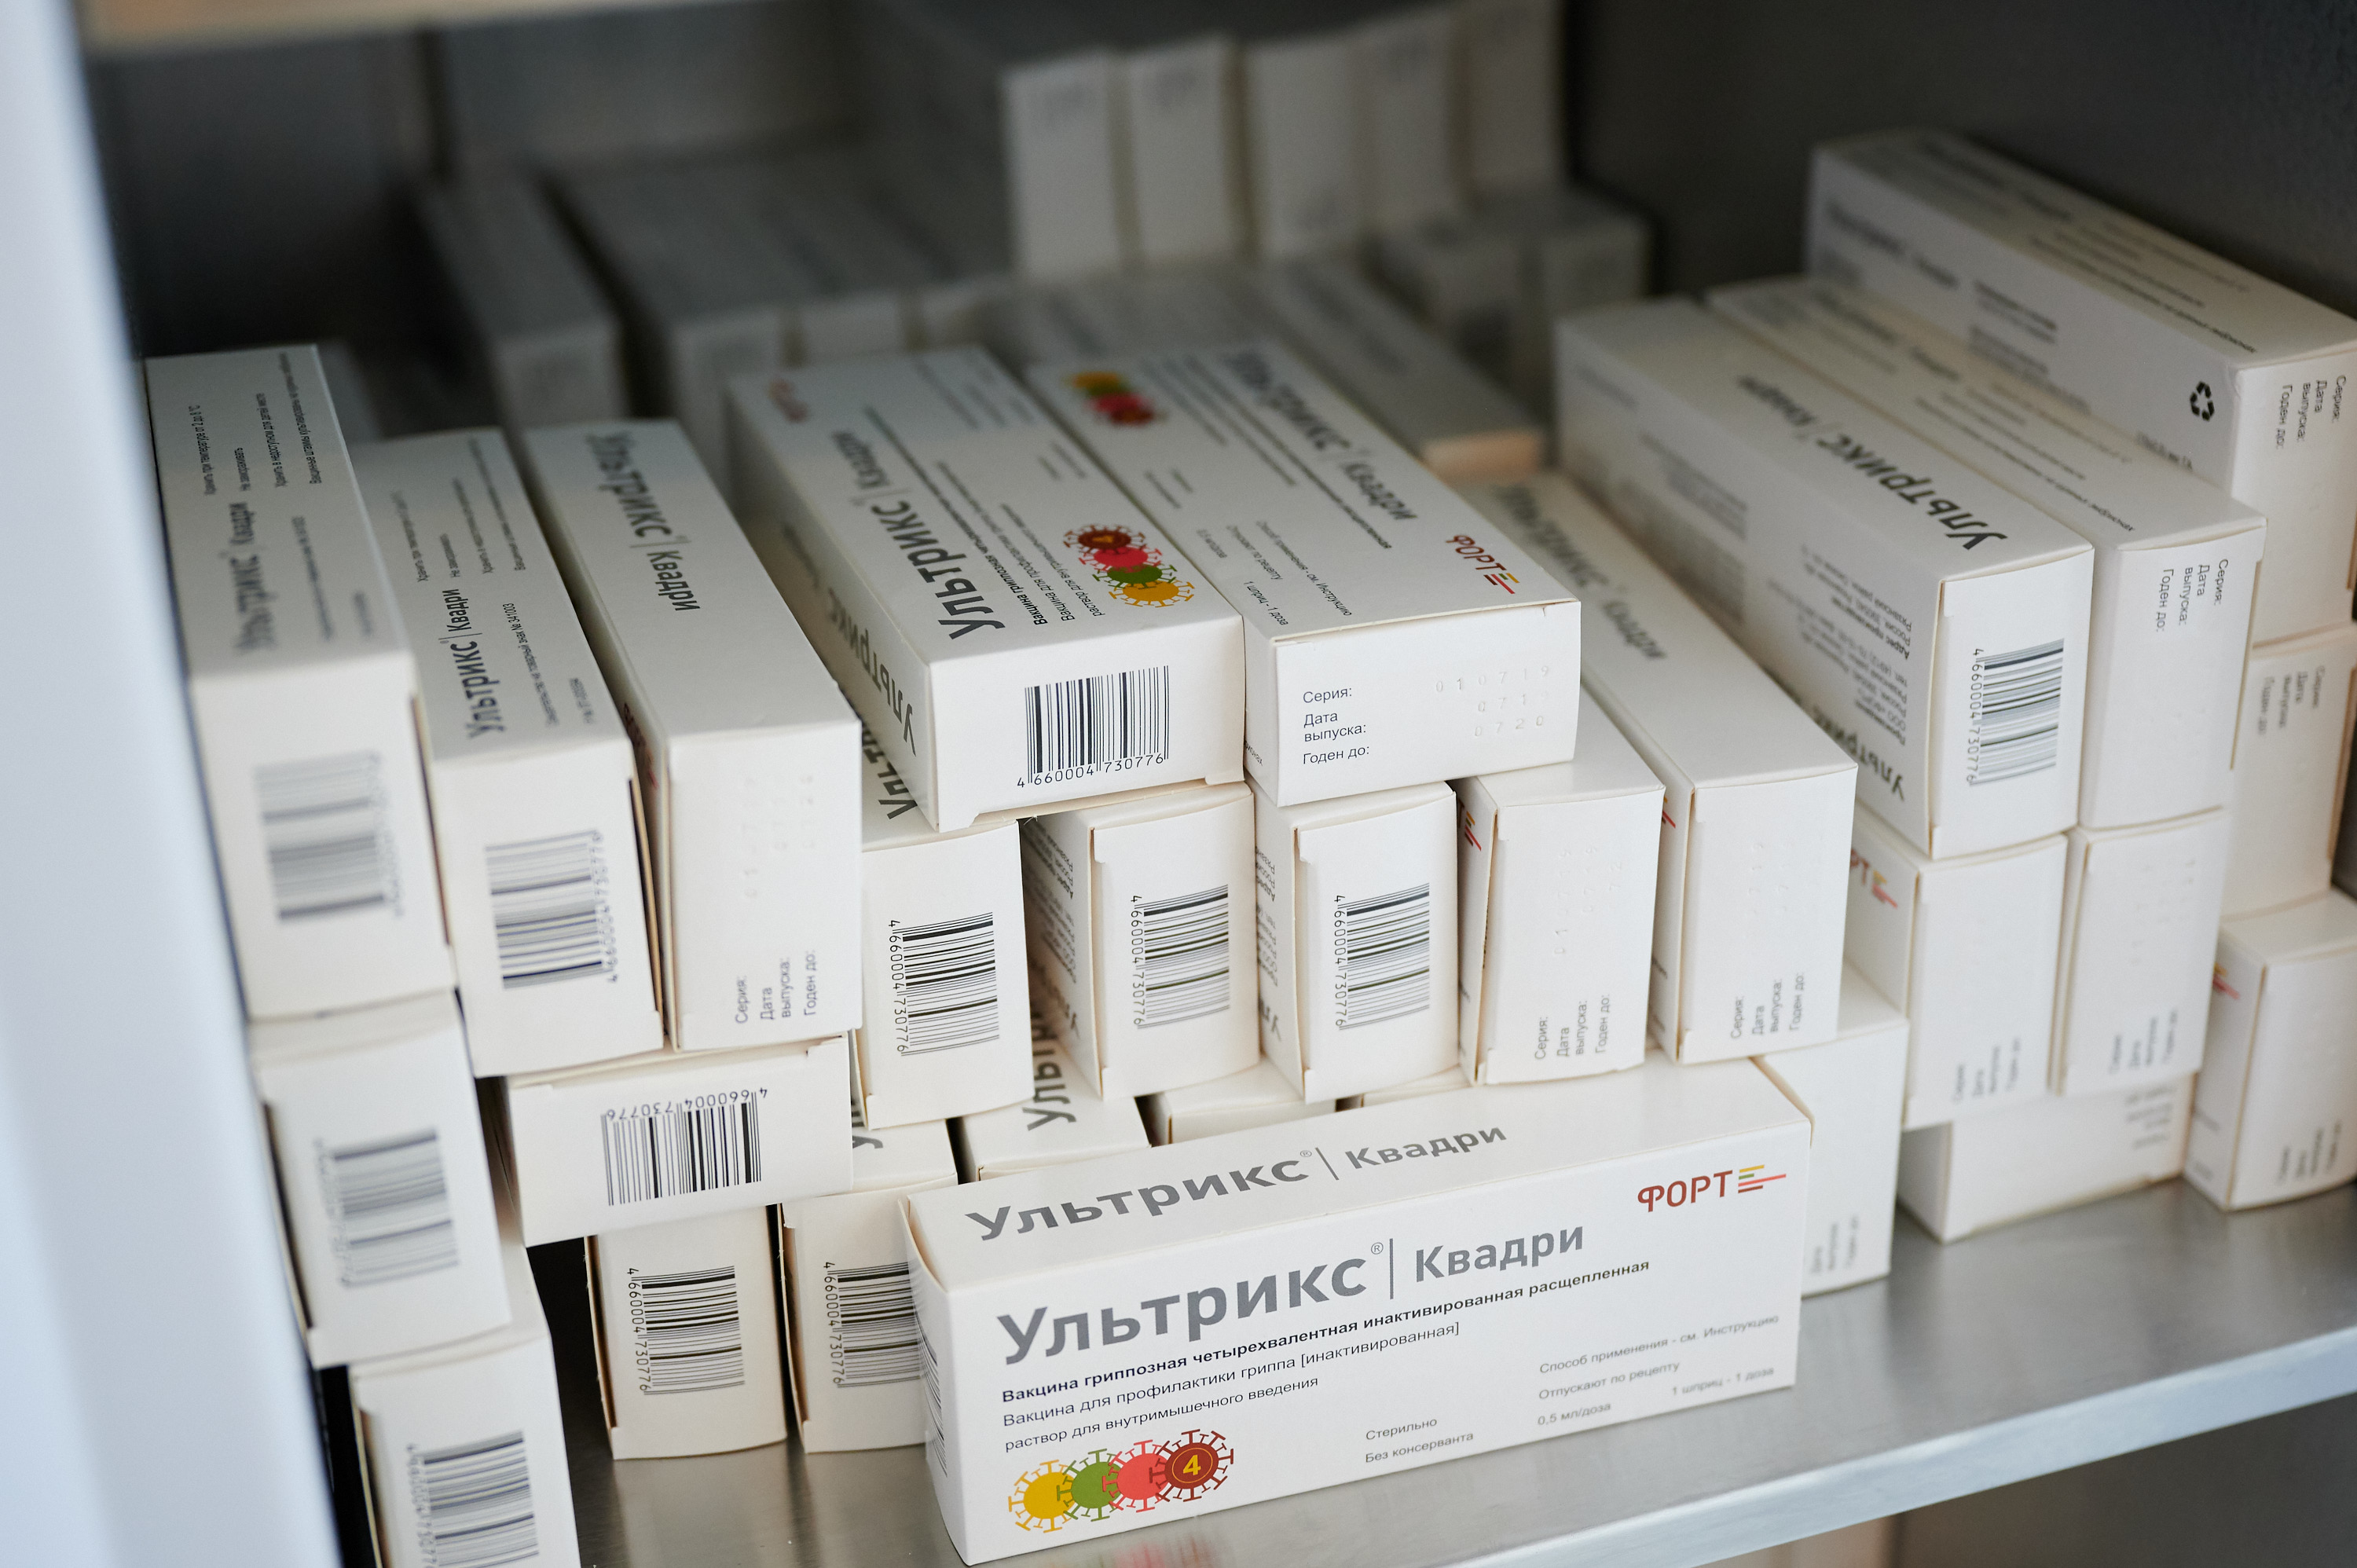 Ростех начинает поставки вакцины «Ультрикс Квадри» на российский рынок